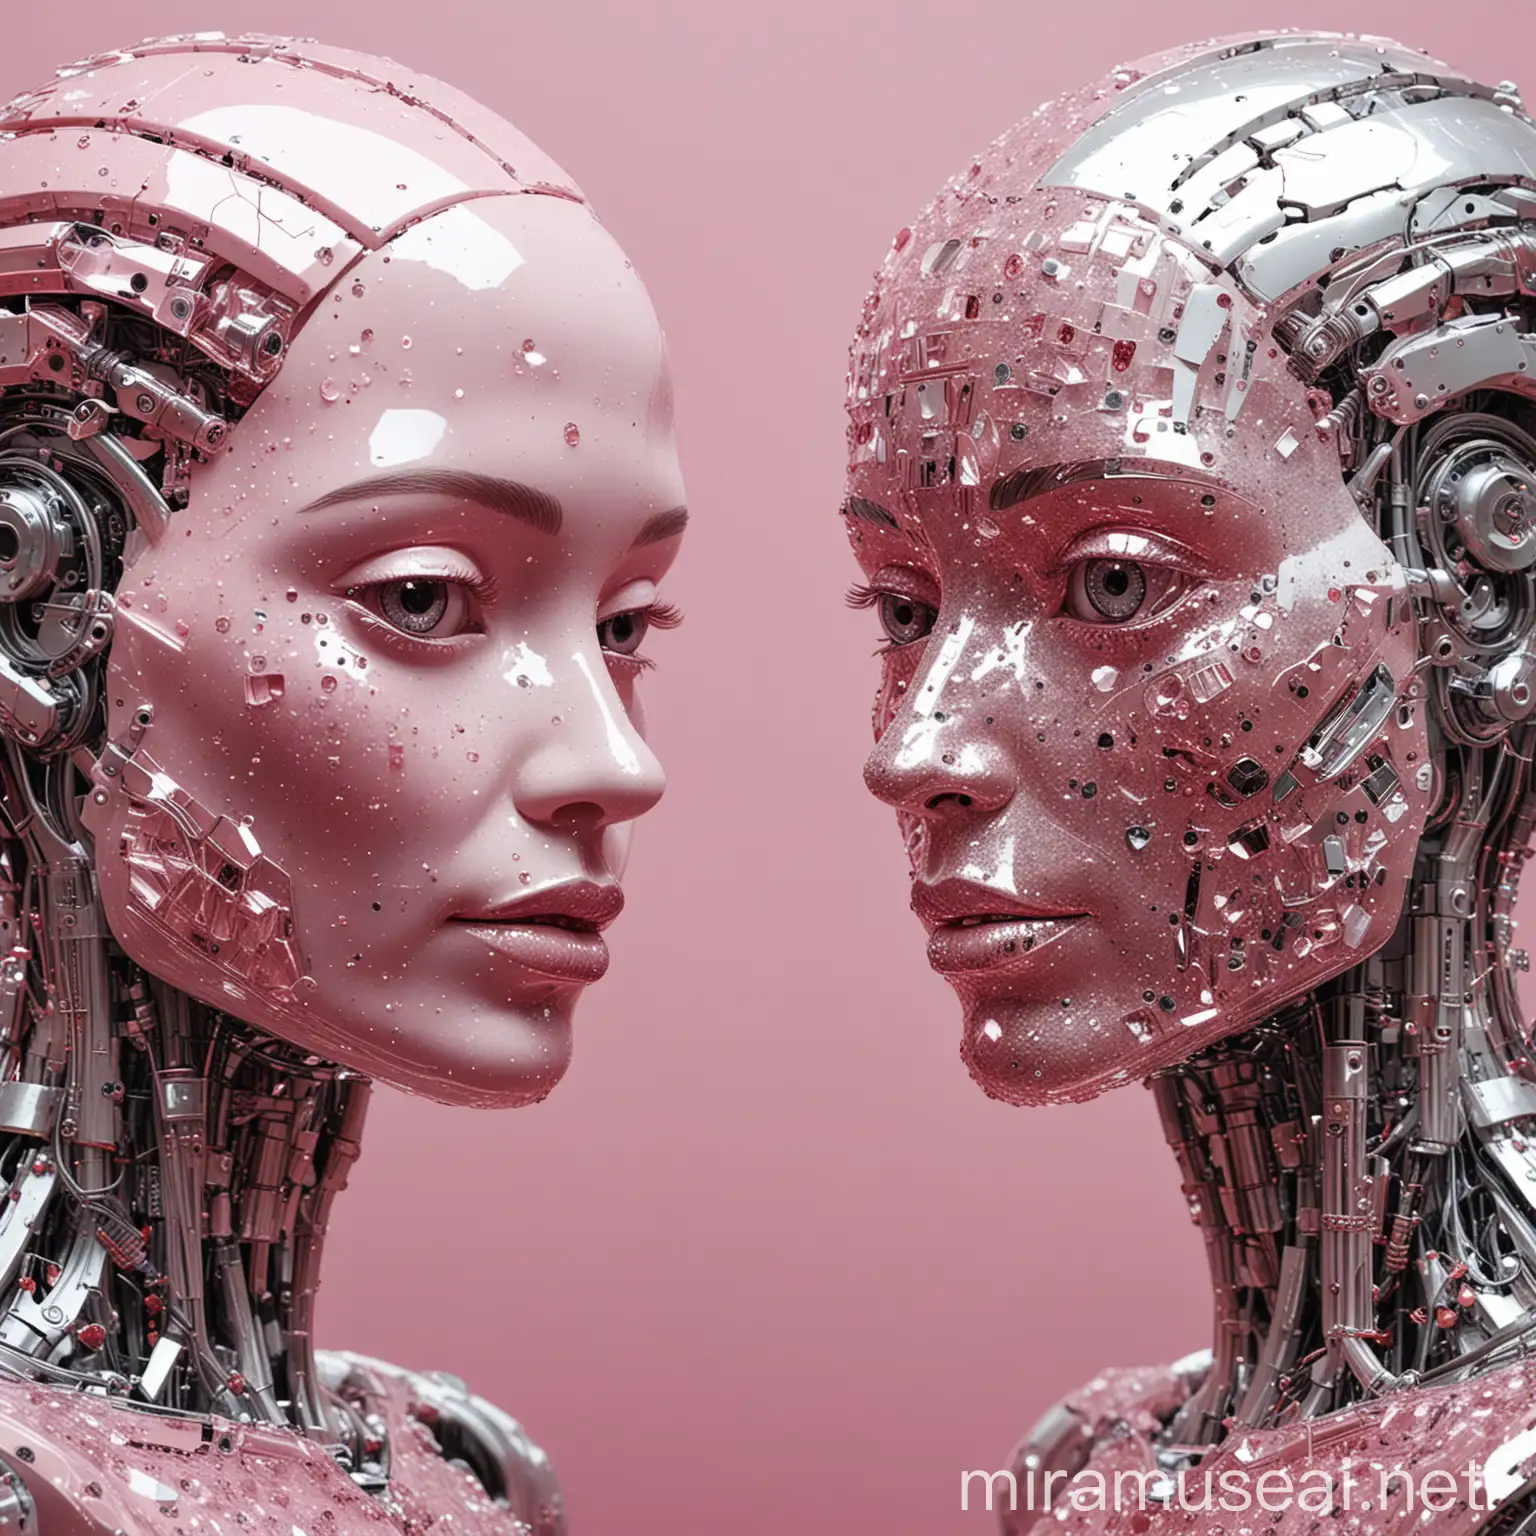 два лица справа и слева, они похожи на человеческие, но они глянцевые и как будто это роботы очень похожие на человека, так же виднеется  их шея и часть туловища, до торса, которые сделаны из кристаллов, все это на фоне серебряно-розовой  абстракции 